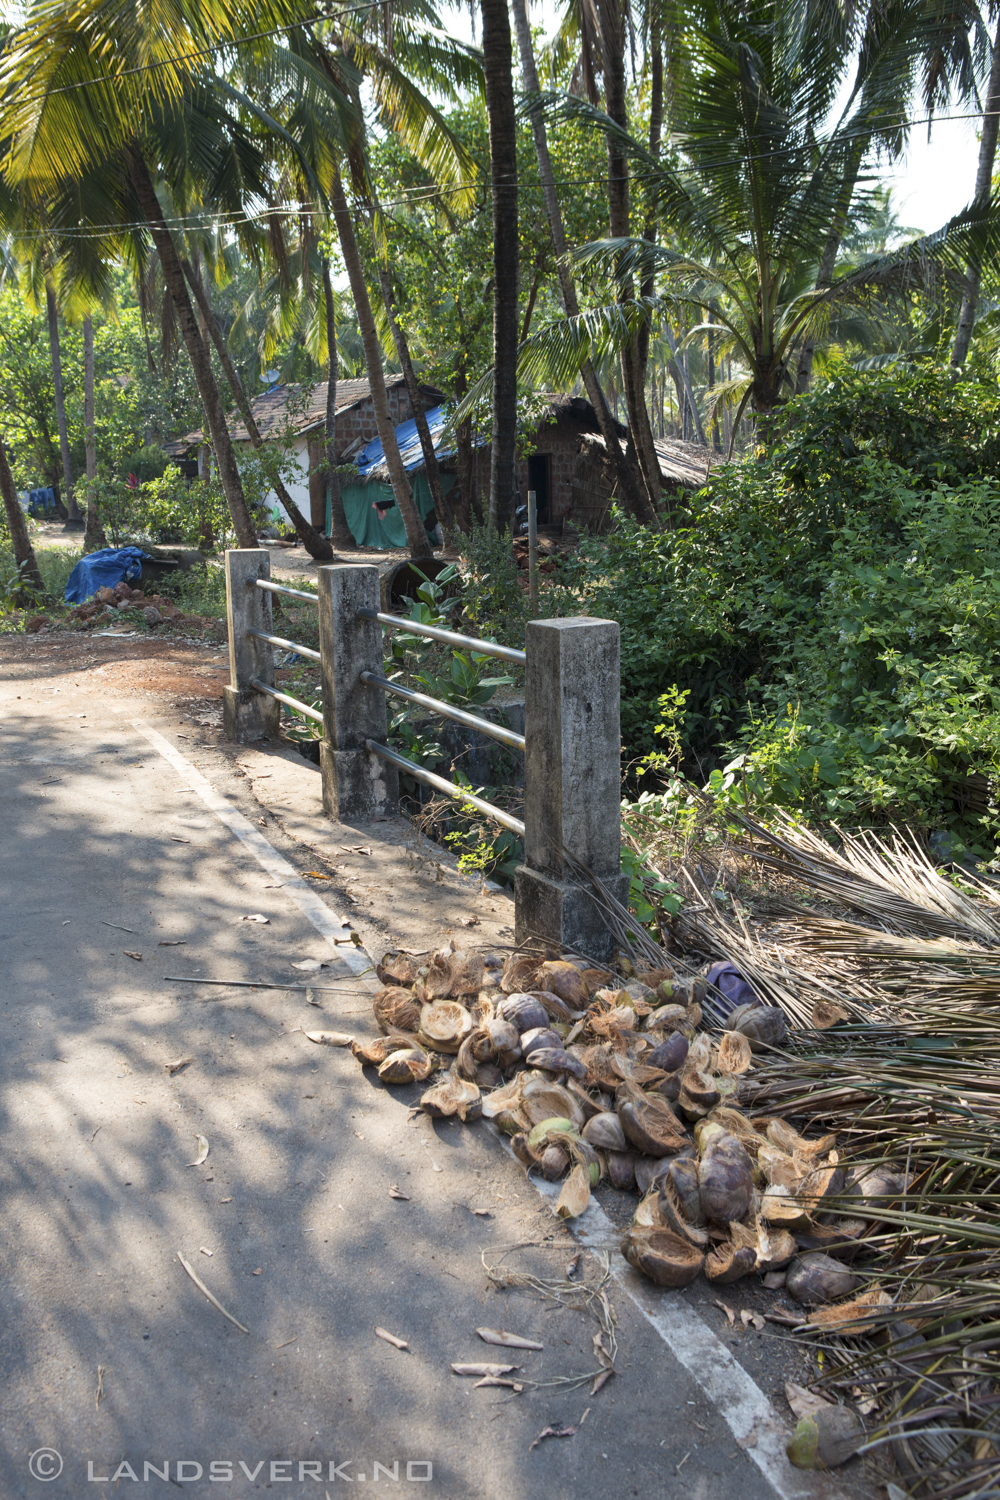 Goa, India. 

(Canon EOS 5D Mark III / Canon EF 24-70mm f/2.8 L USM)